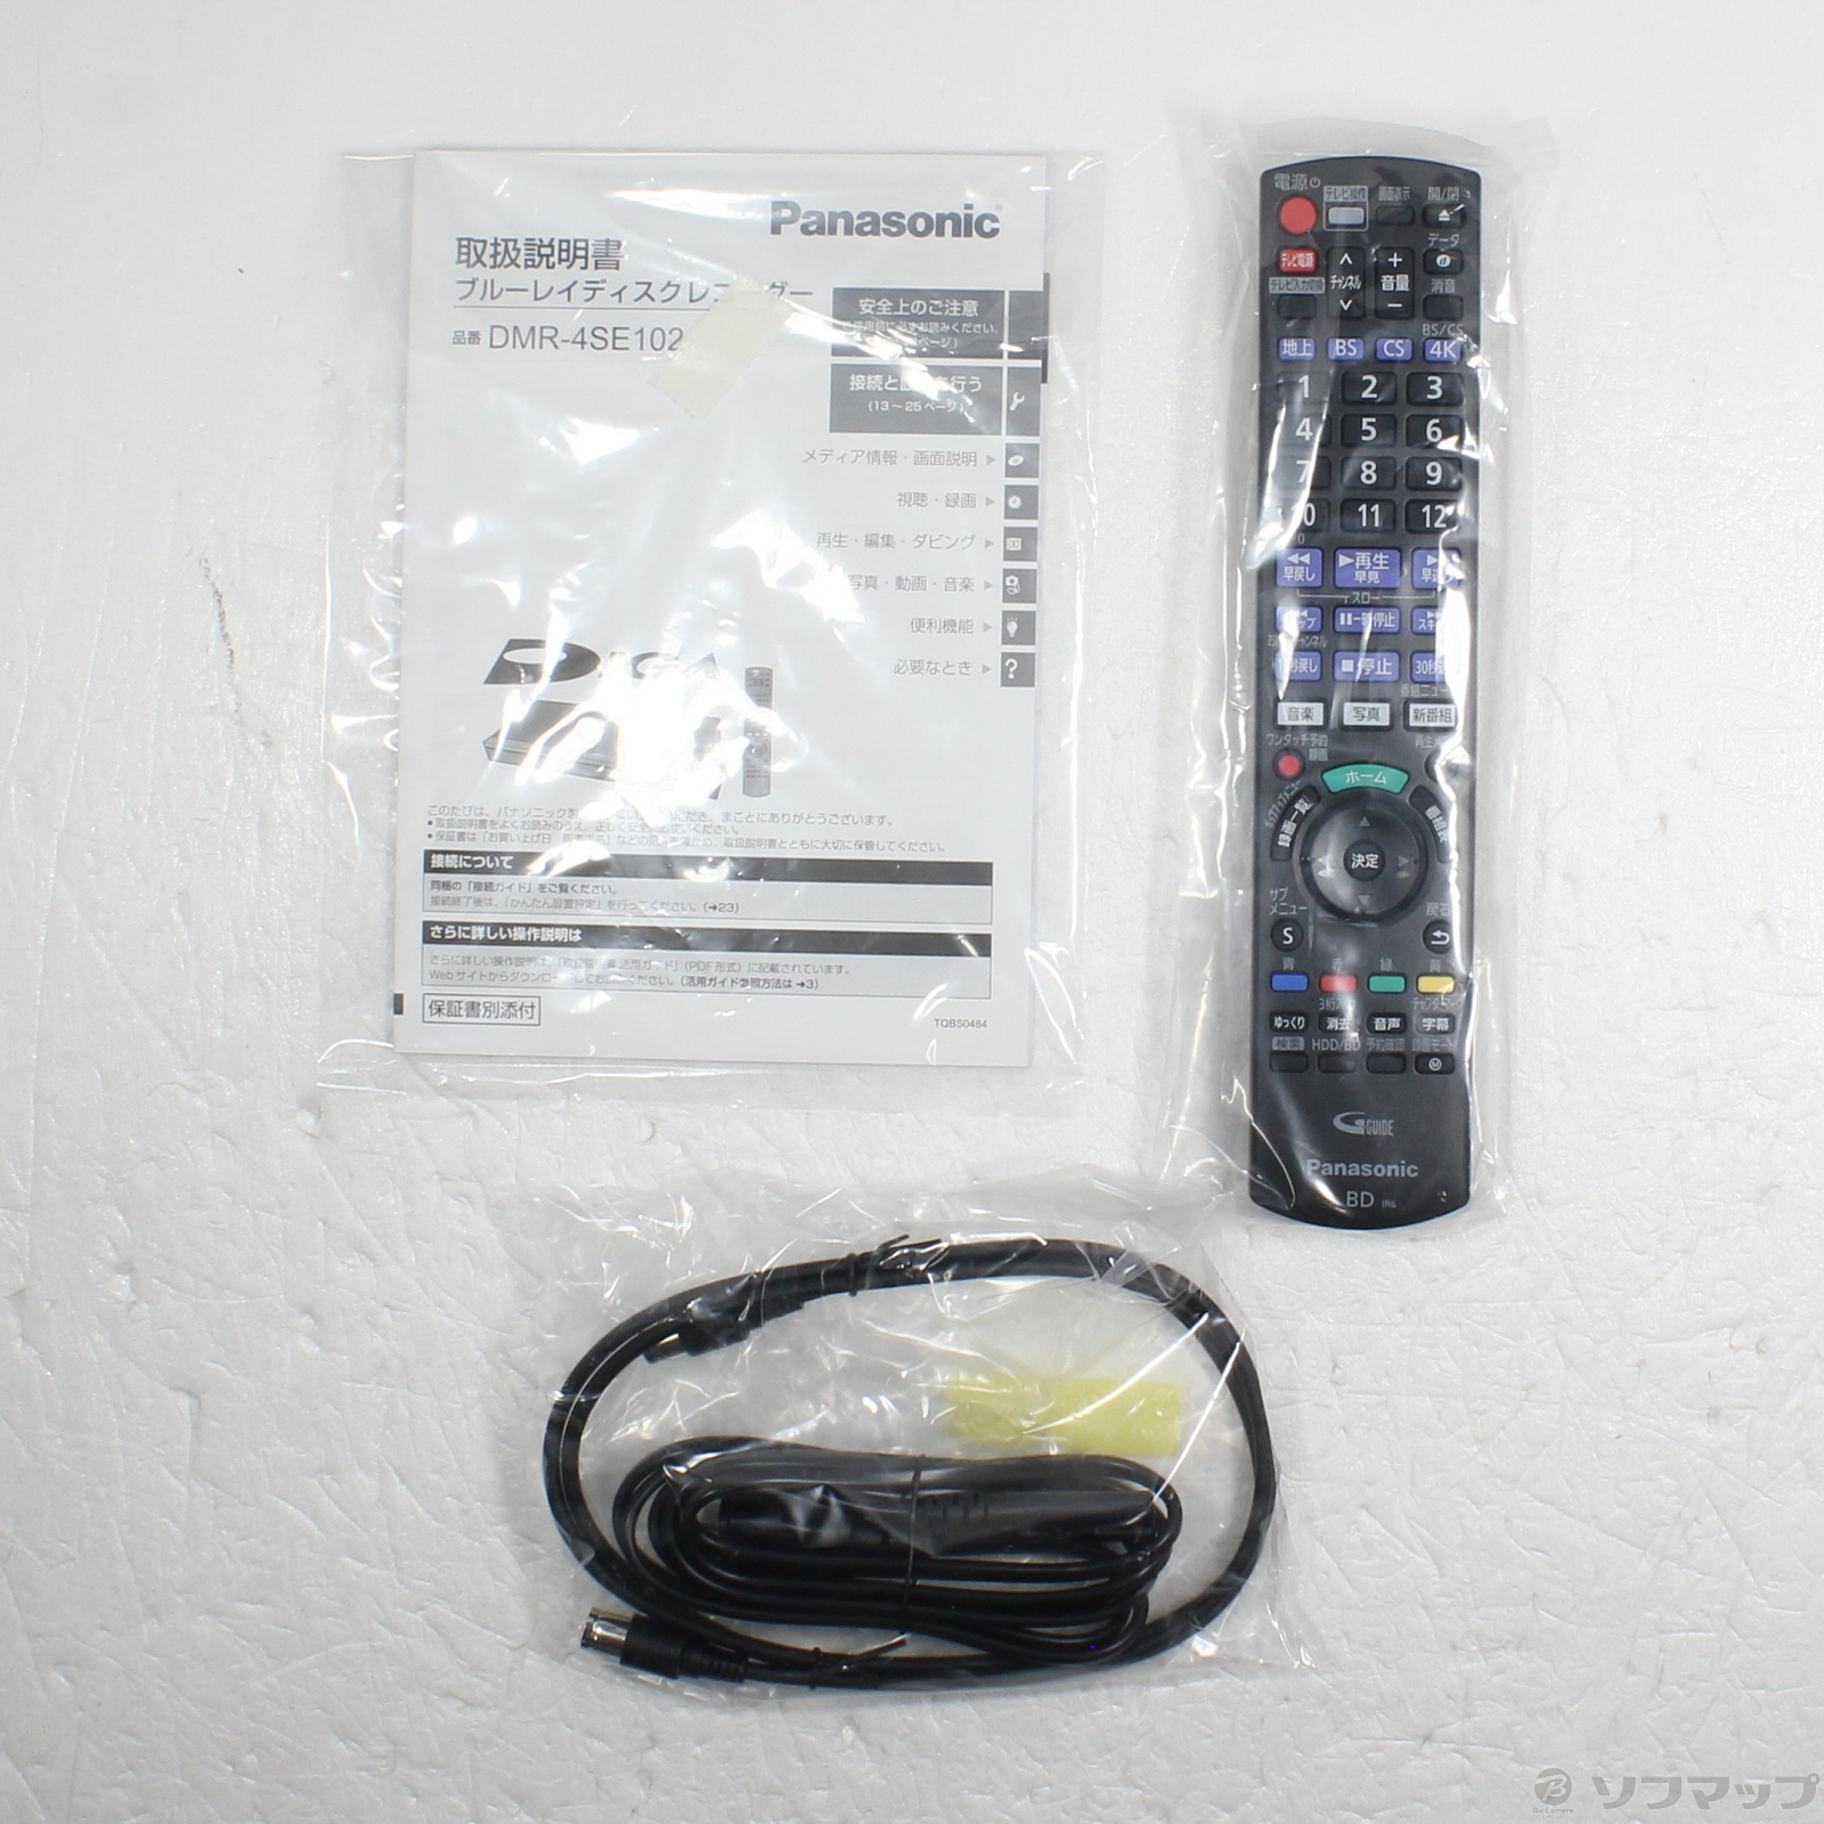 新品未開封品 Panasonic 4Kディーガ DMR-4SE102レコーダー